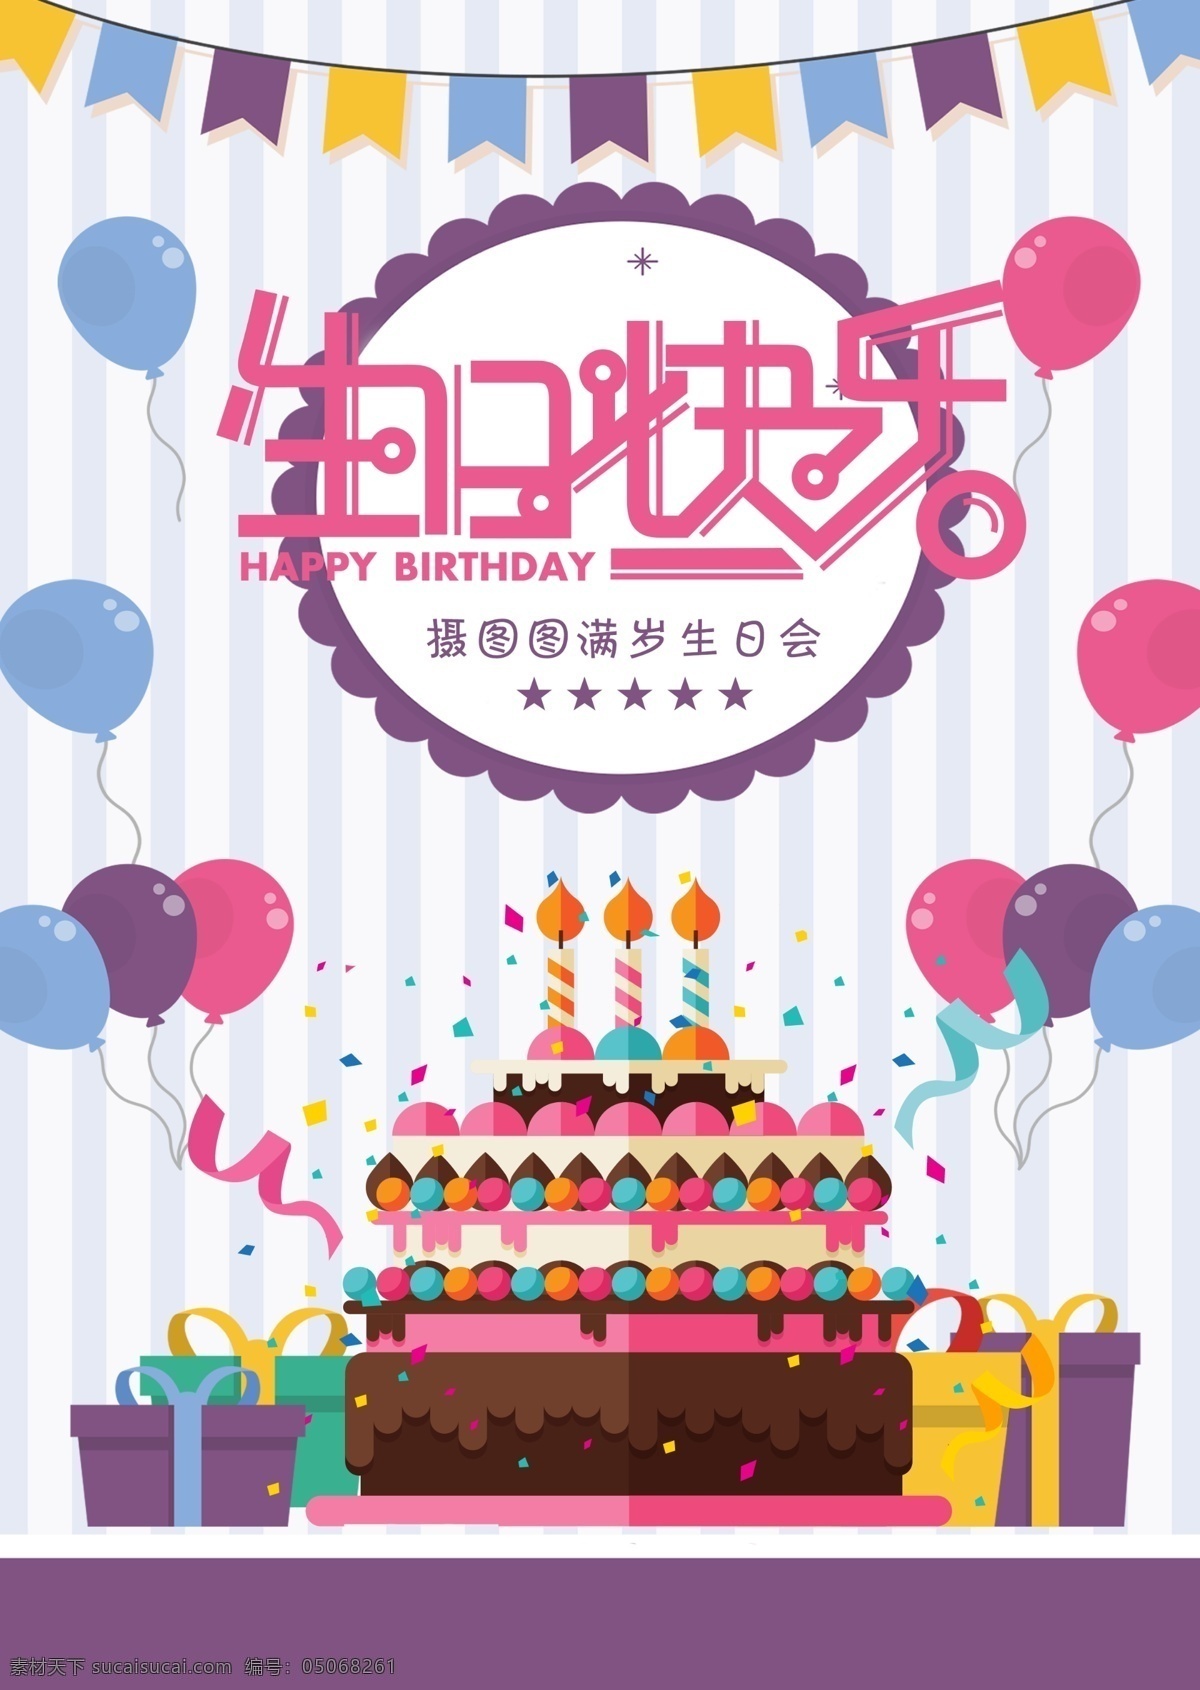 生日 快乐 海报 可爱 卡通 派对 庆祝 庆生 birthday 蛋糕蛋糕 生日海报 party